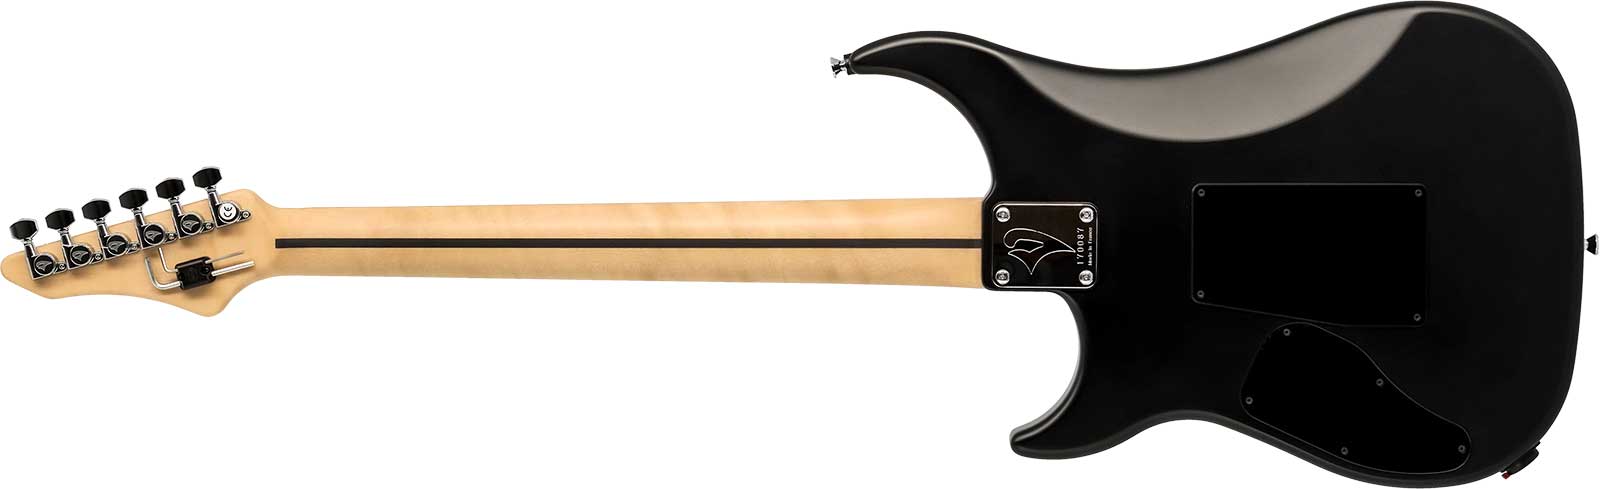 Vigier Ron Thal Bfoot Excalibur Signature Hs Fr Rw - Black Matte - Kenmerkende elektrische gitaar - Variation 1